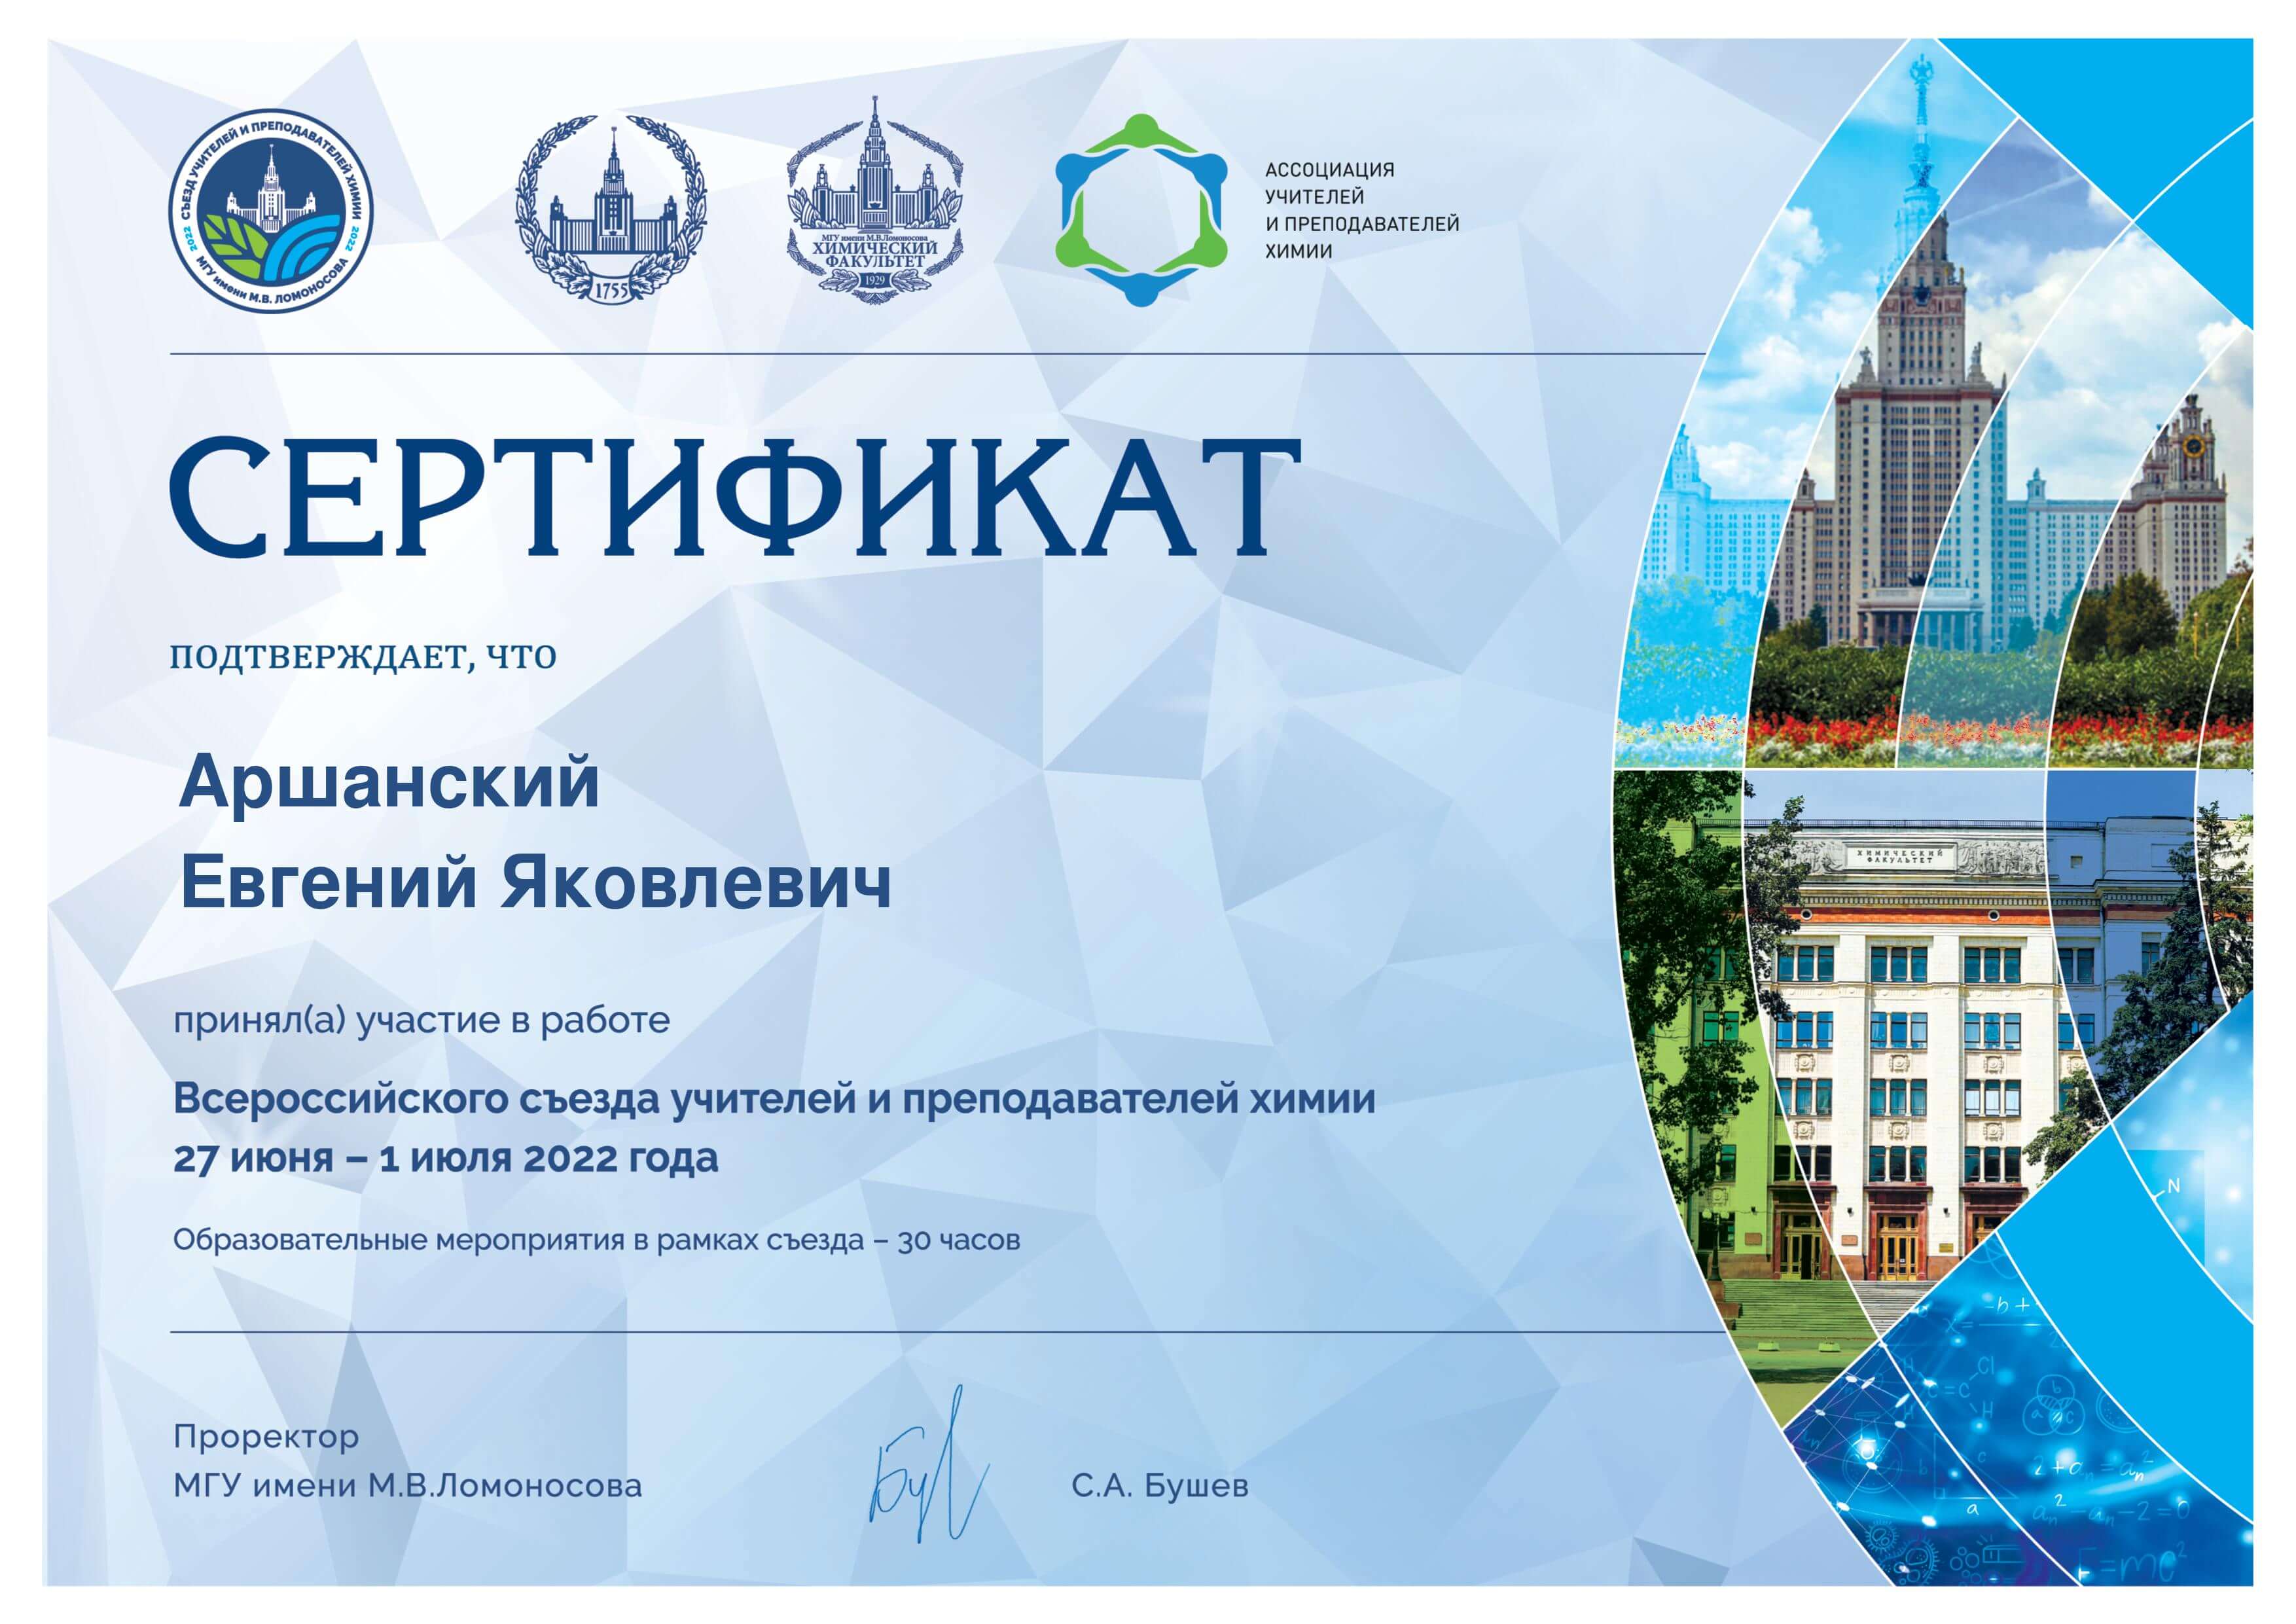 Сертификат Аршанский